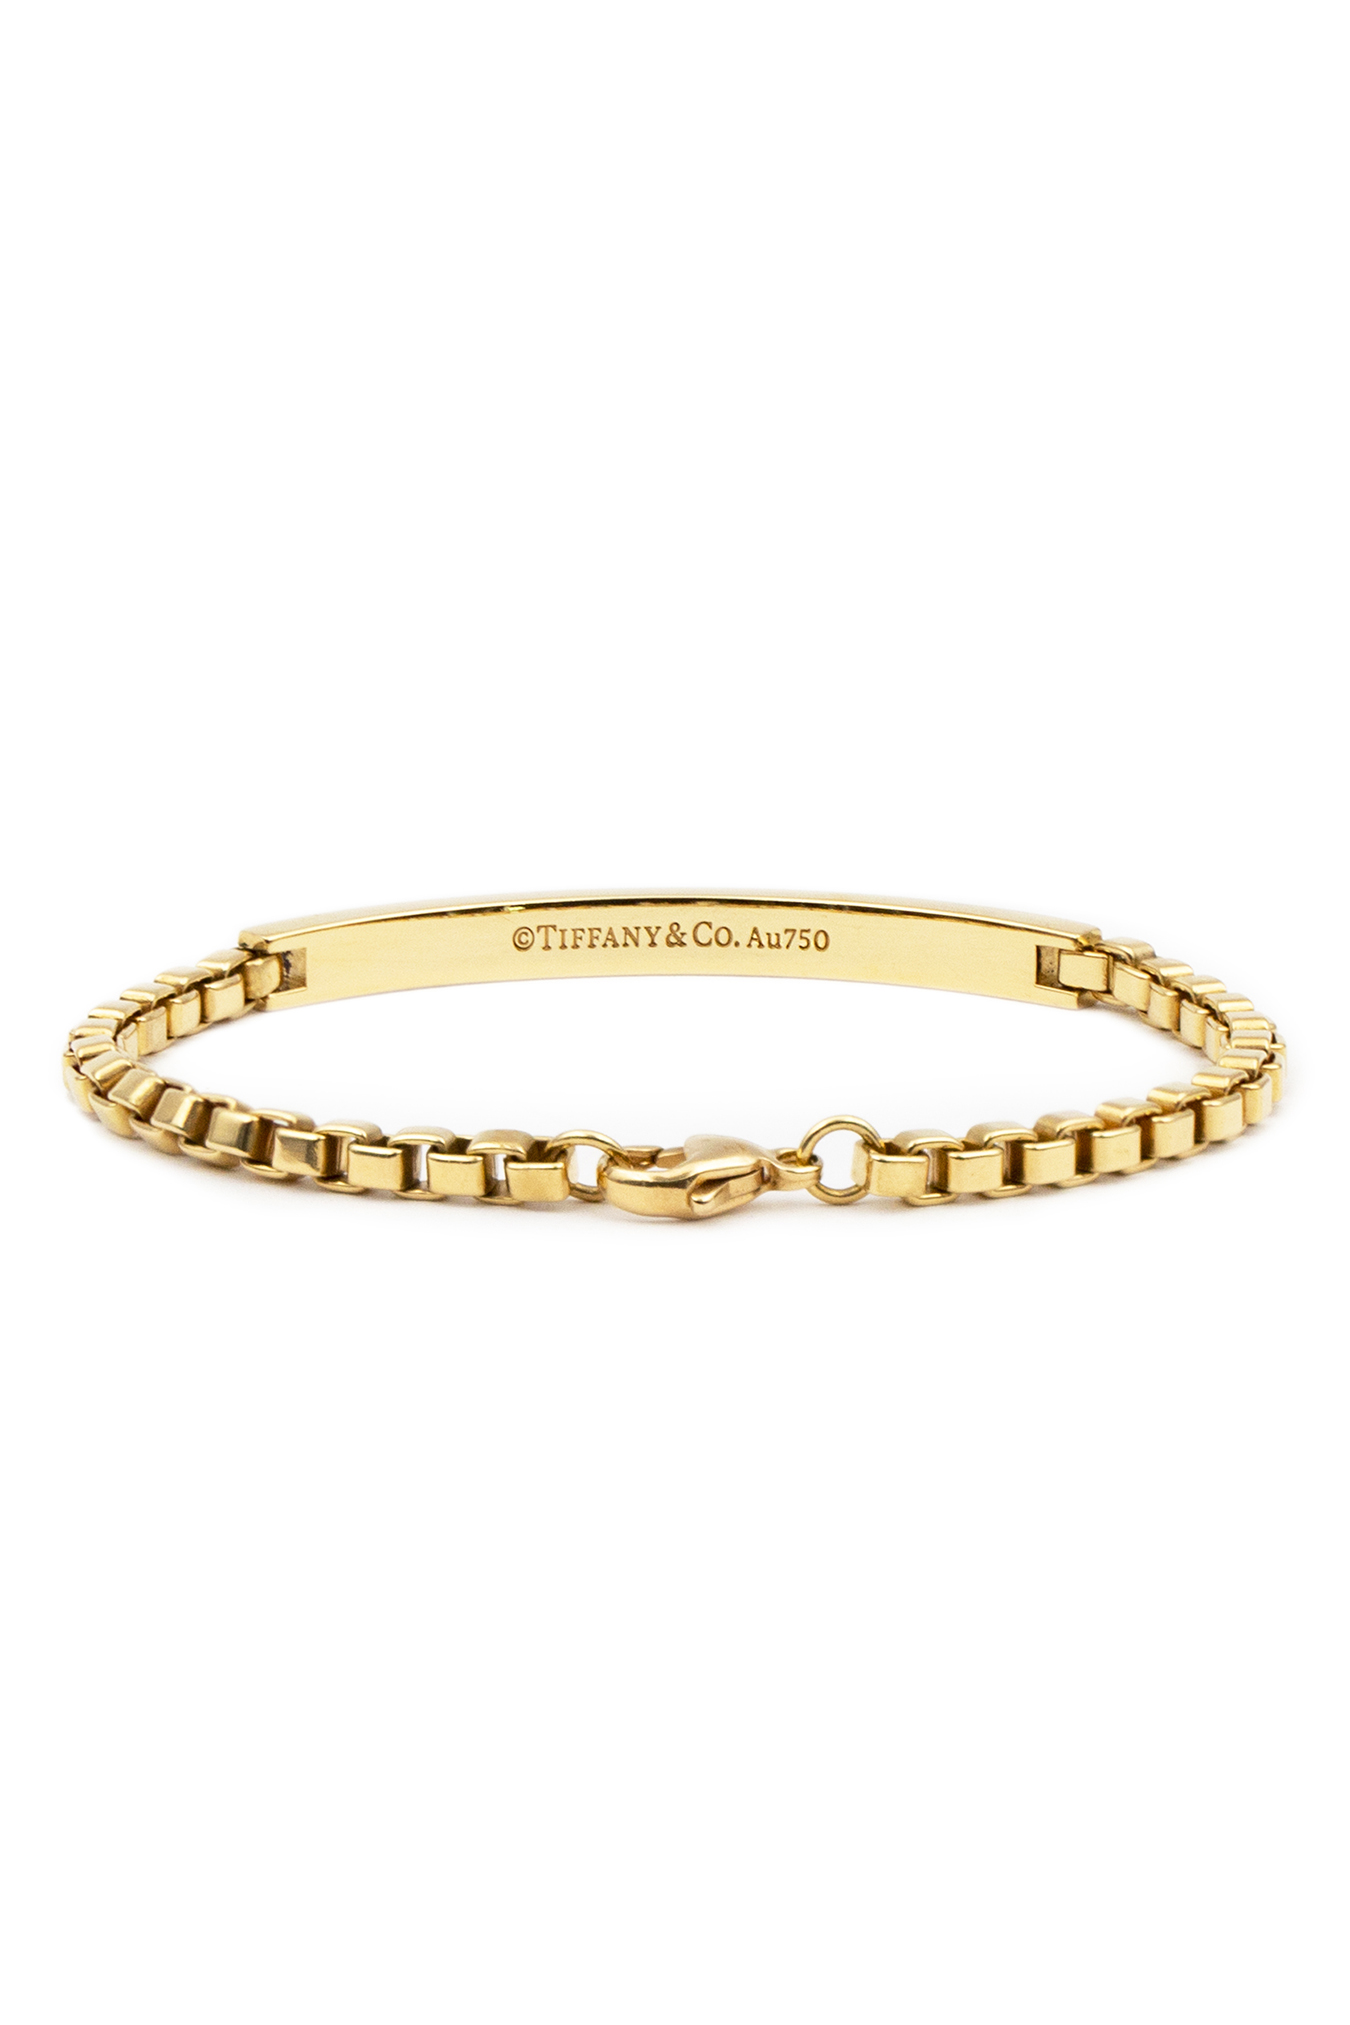 Tiffany & Co. Diamond Solitaire Bracelet in 18k Rose Gold